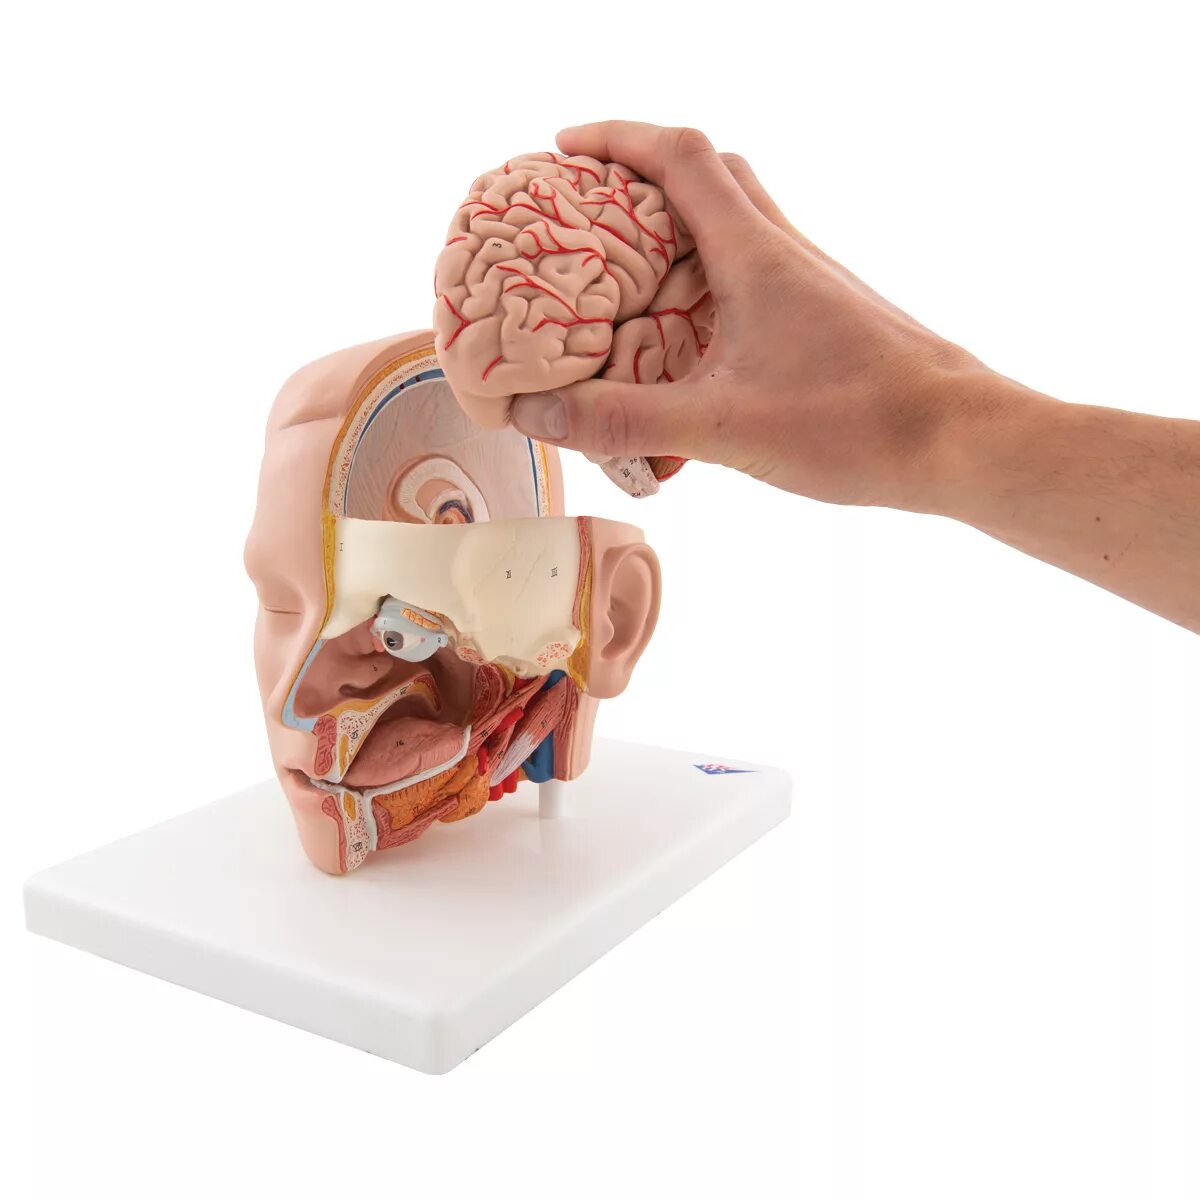 1 мед в голове. Анатомическая модель головы и мозга. Муляж головы. Макет мозга.